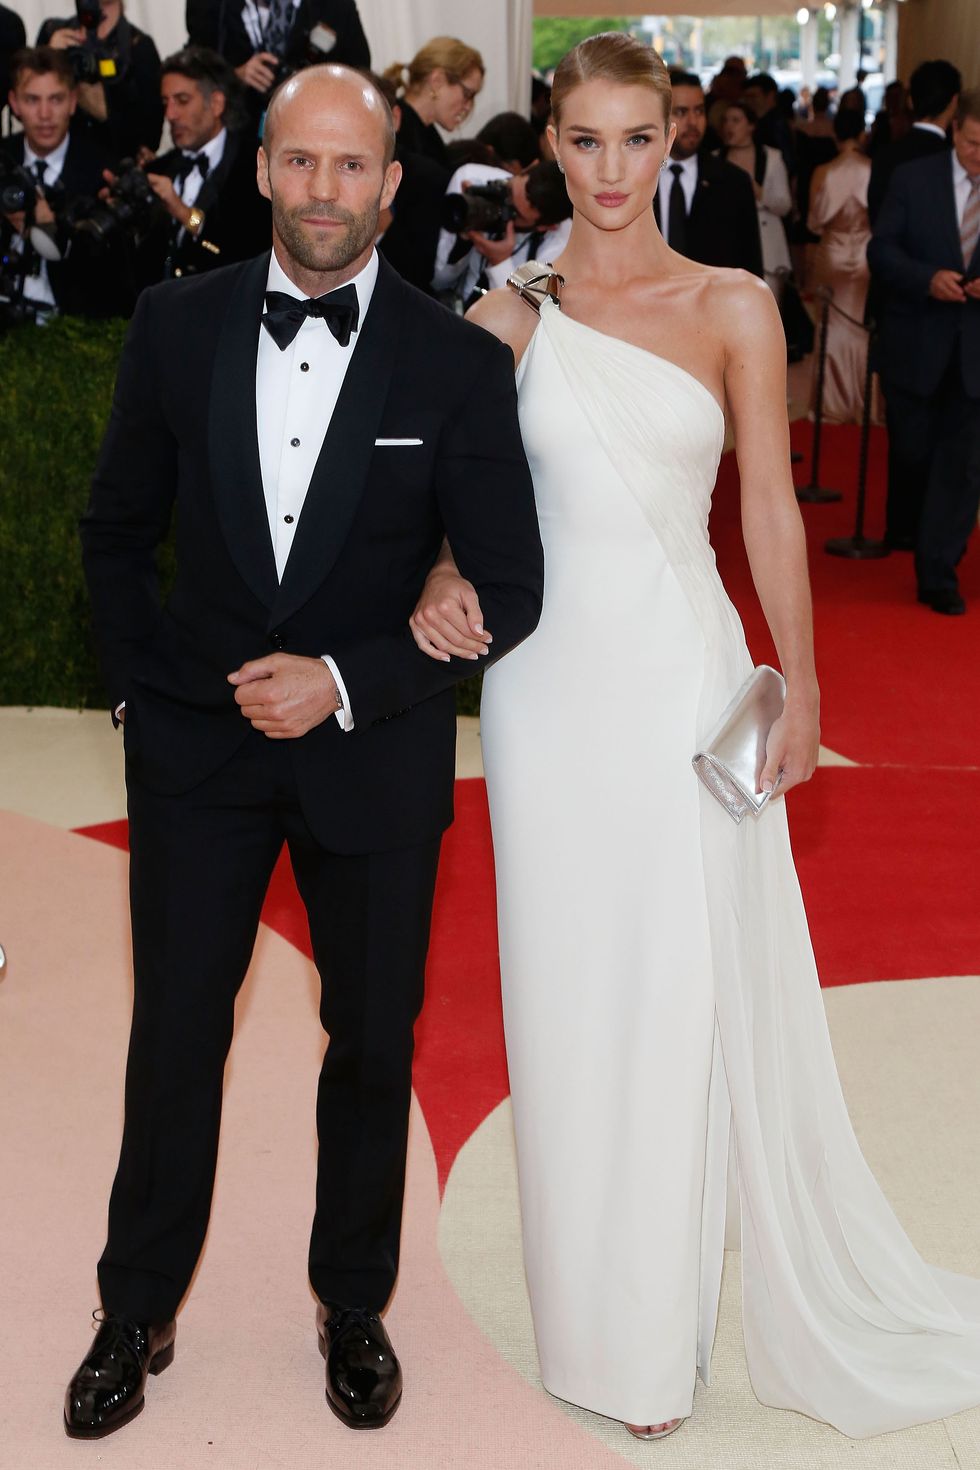 <p>L'attore e l'ex Angelo di Victoria Secret, che stanno insieme dal 2010, hanno ufficializzato la loro unione. Insieme hanno partecipato a <a href="http://www.elle.com/it/magazine/personaggi/news/g583/met-gala-2016-foto-coppie-red-carpet/?slide=6">numerosi red carpet</a> – tra cui gli Oscar e i Golden Globes.</p>